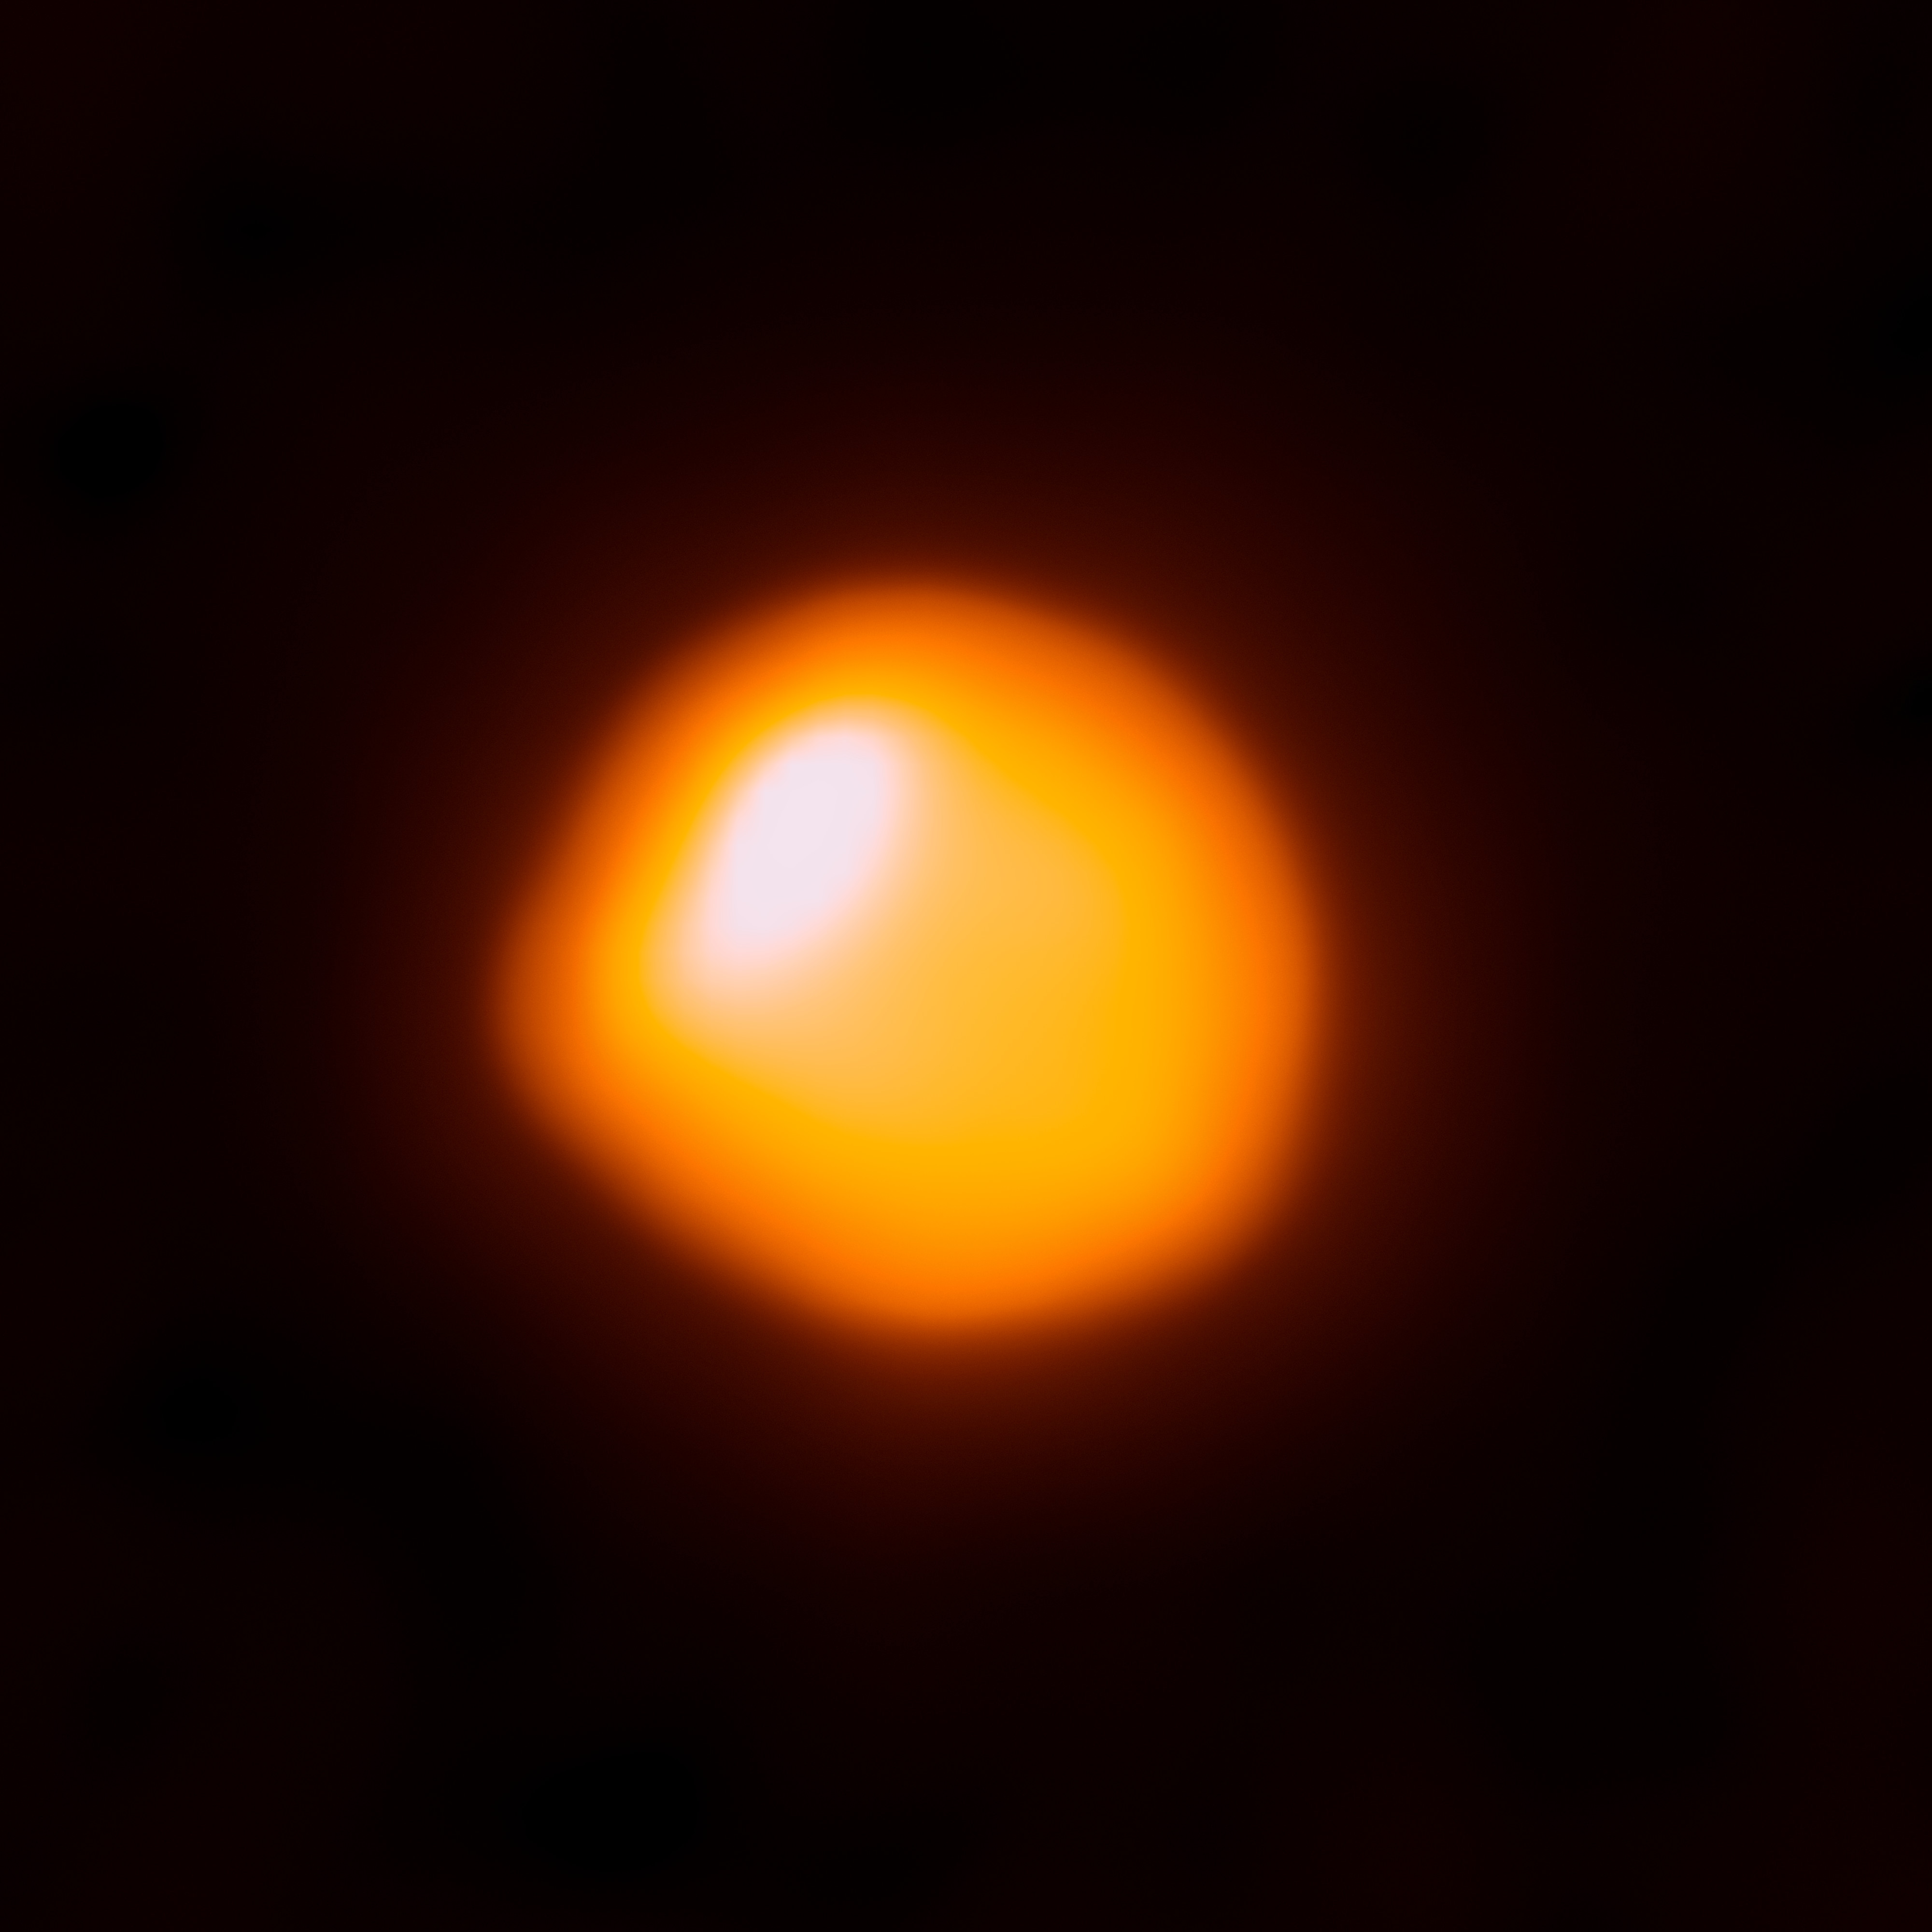 Betelgeuse_captured_by_ALMA.jpg